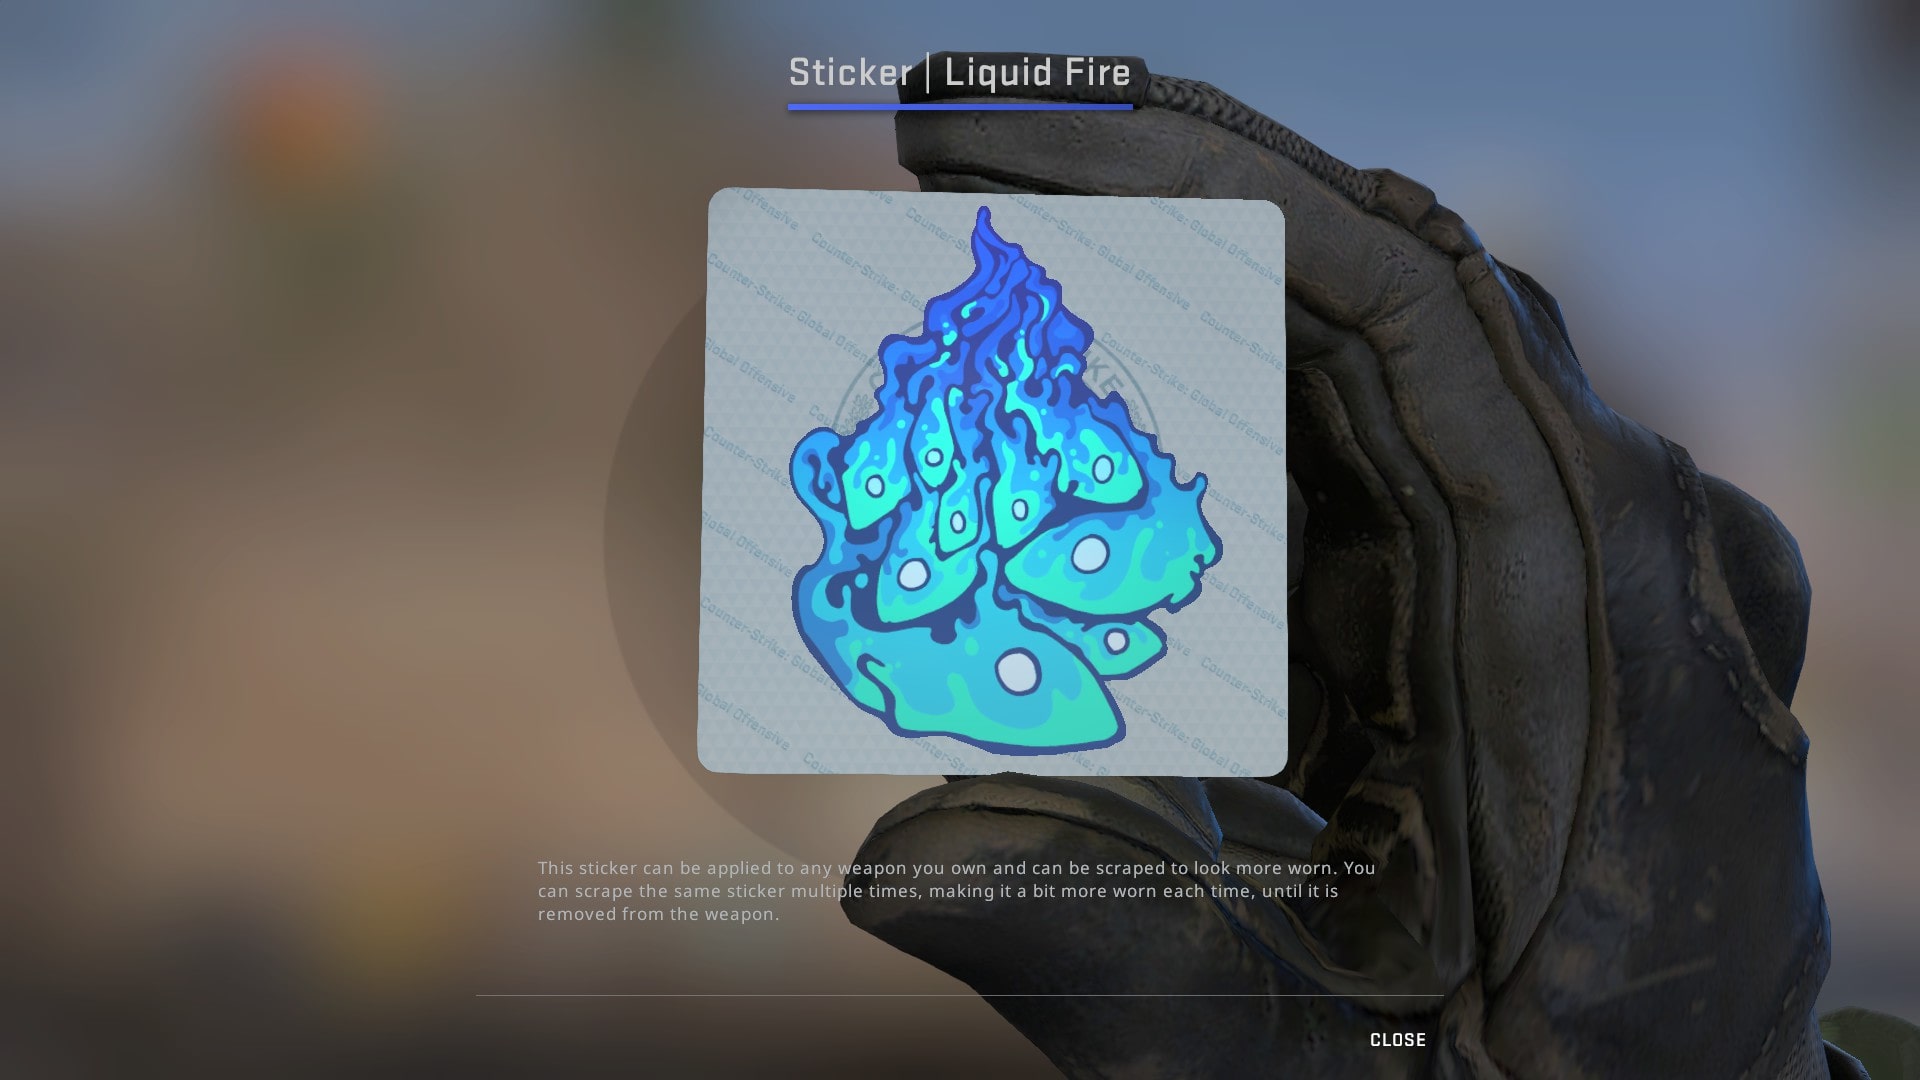 Stiker biru terbaik untuk kerajinan api cair